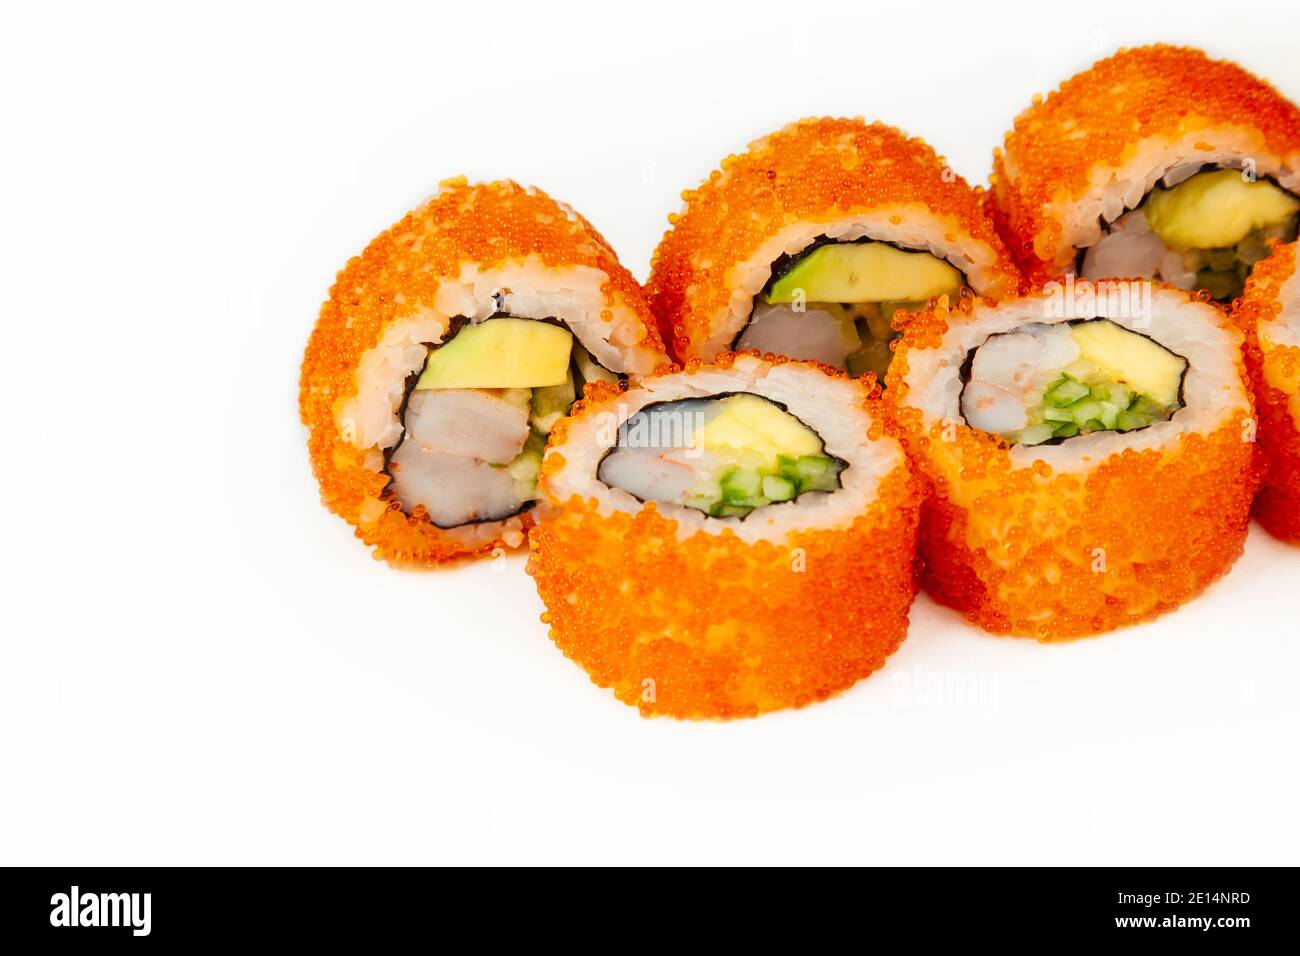 Sushi-Rolle California Rolle auf weißem Hintergrund, Zutaten Garnelen,  Gurke, Avocado, fliegende Fischrogen, Reis, Nori. Traditionelle japanische  Küche. Für die Speisekarte des Restaurants Stockfotografie - Alamy